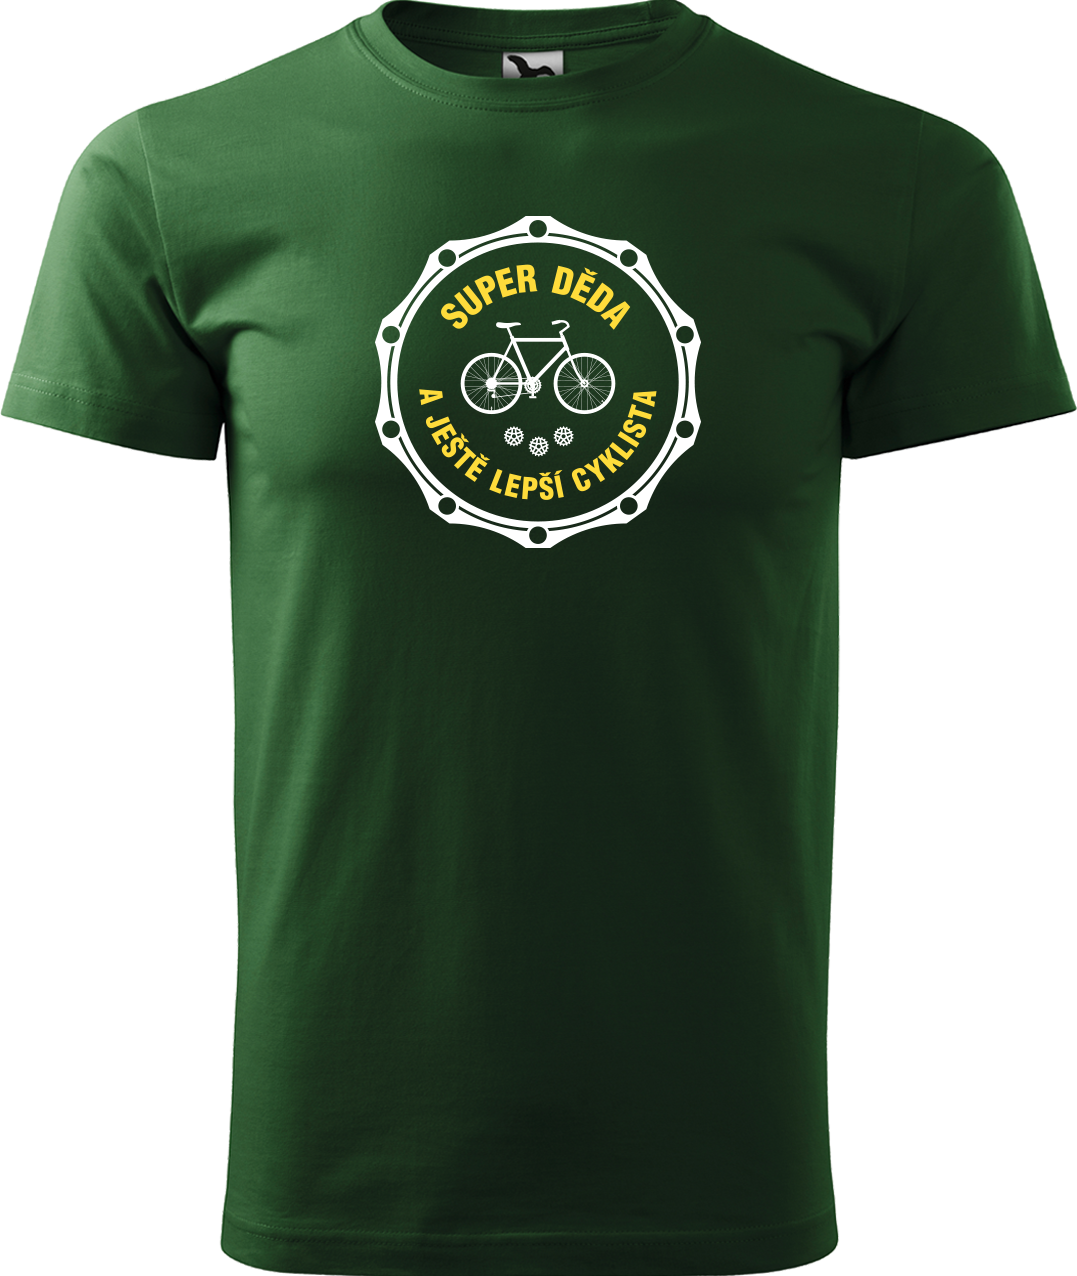 Pánské tričko pro cyklistu - Super děda a ještě lepší cyklista Velikost: XL, Barva: Lahvově zelená (06)